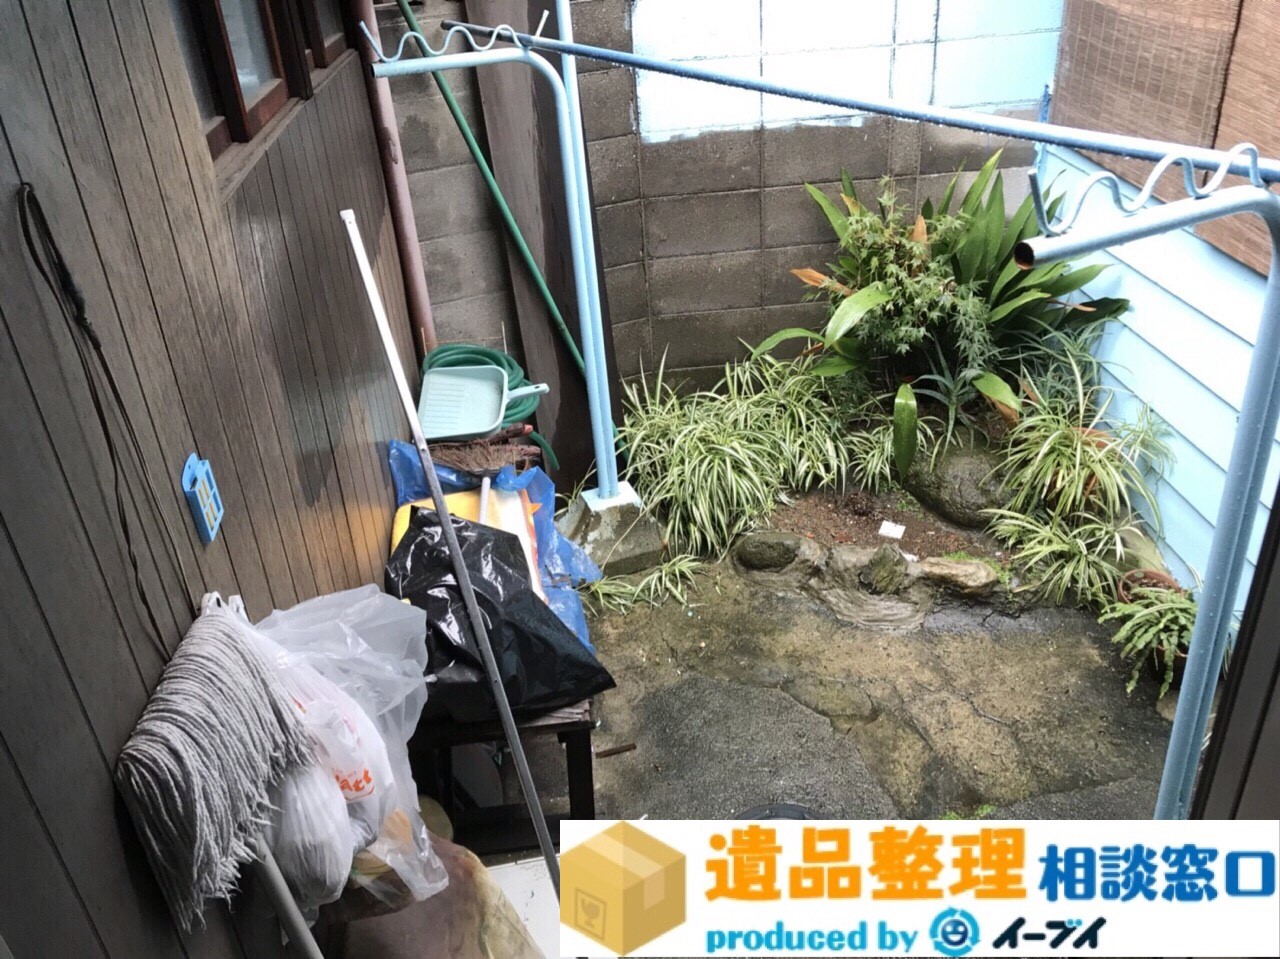 大阪府交野市で遺品整理に伴いベランダの植木鉢などを処分しました。のアイキャッチ